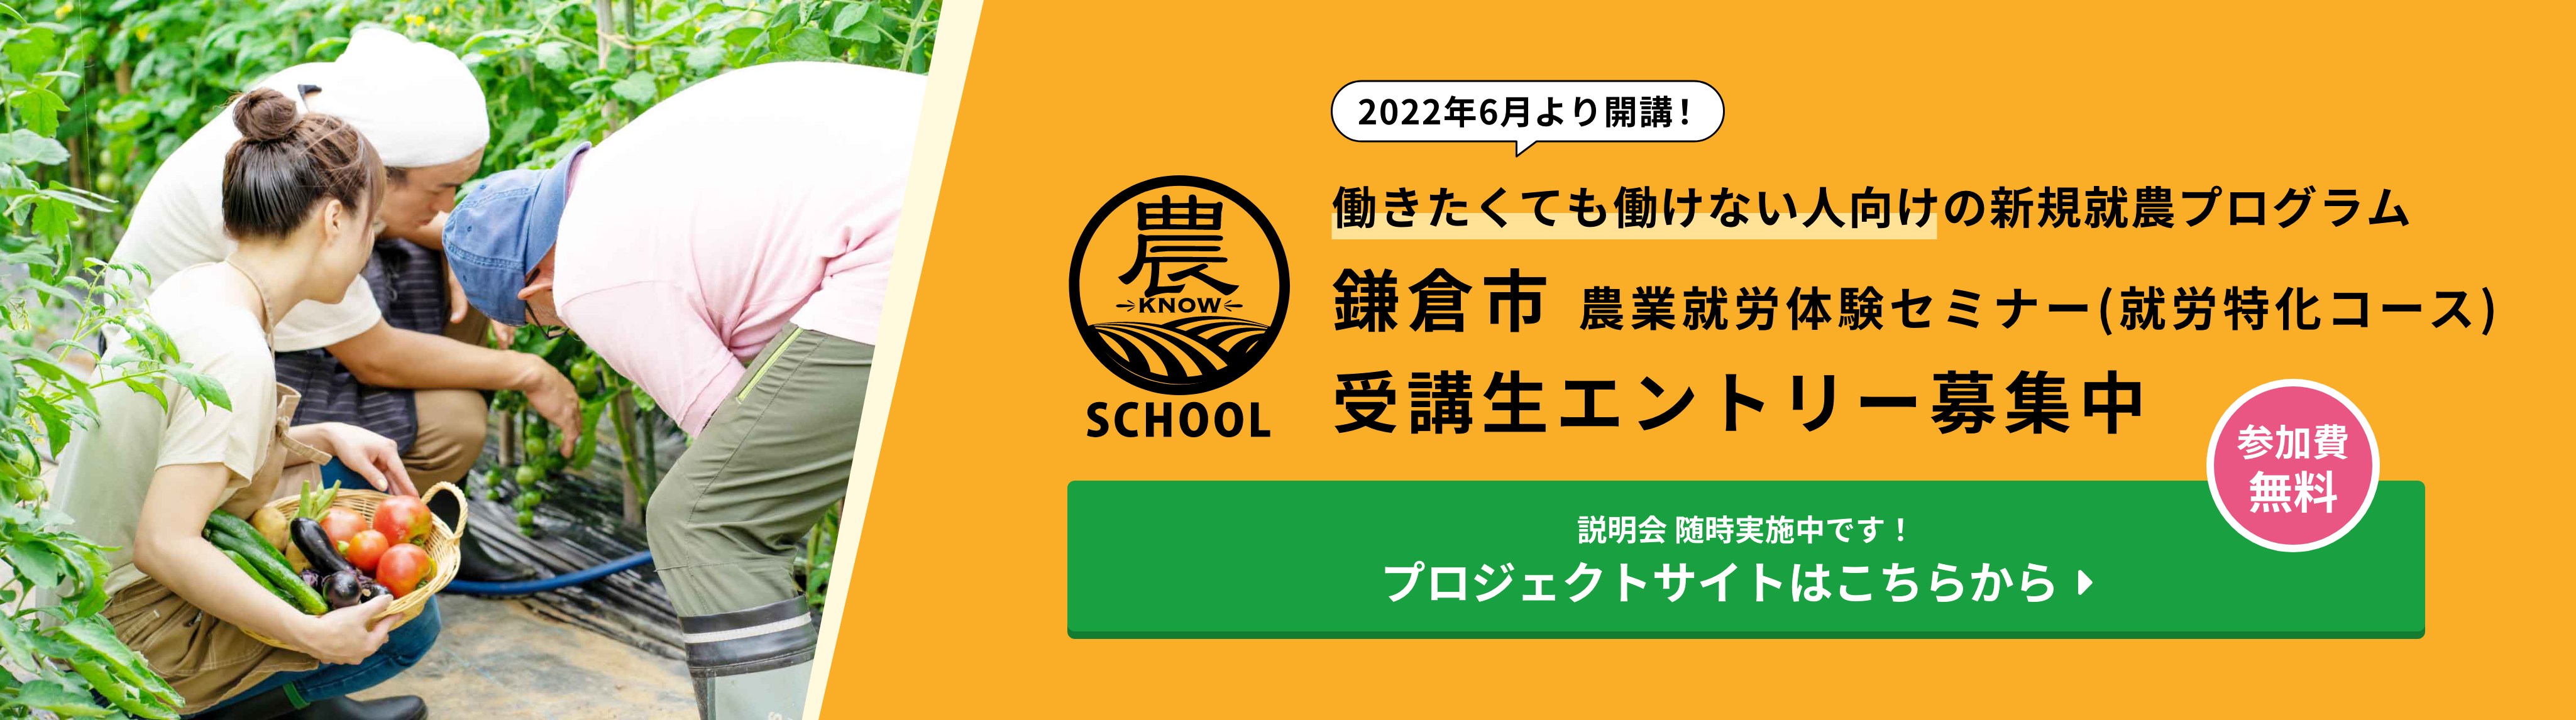 2022年5月より開講 鎌倉市農業就労体験セミナー(就労特化コース) 受講生エントリー募集中